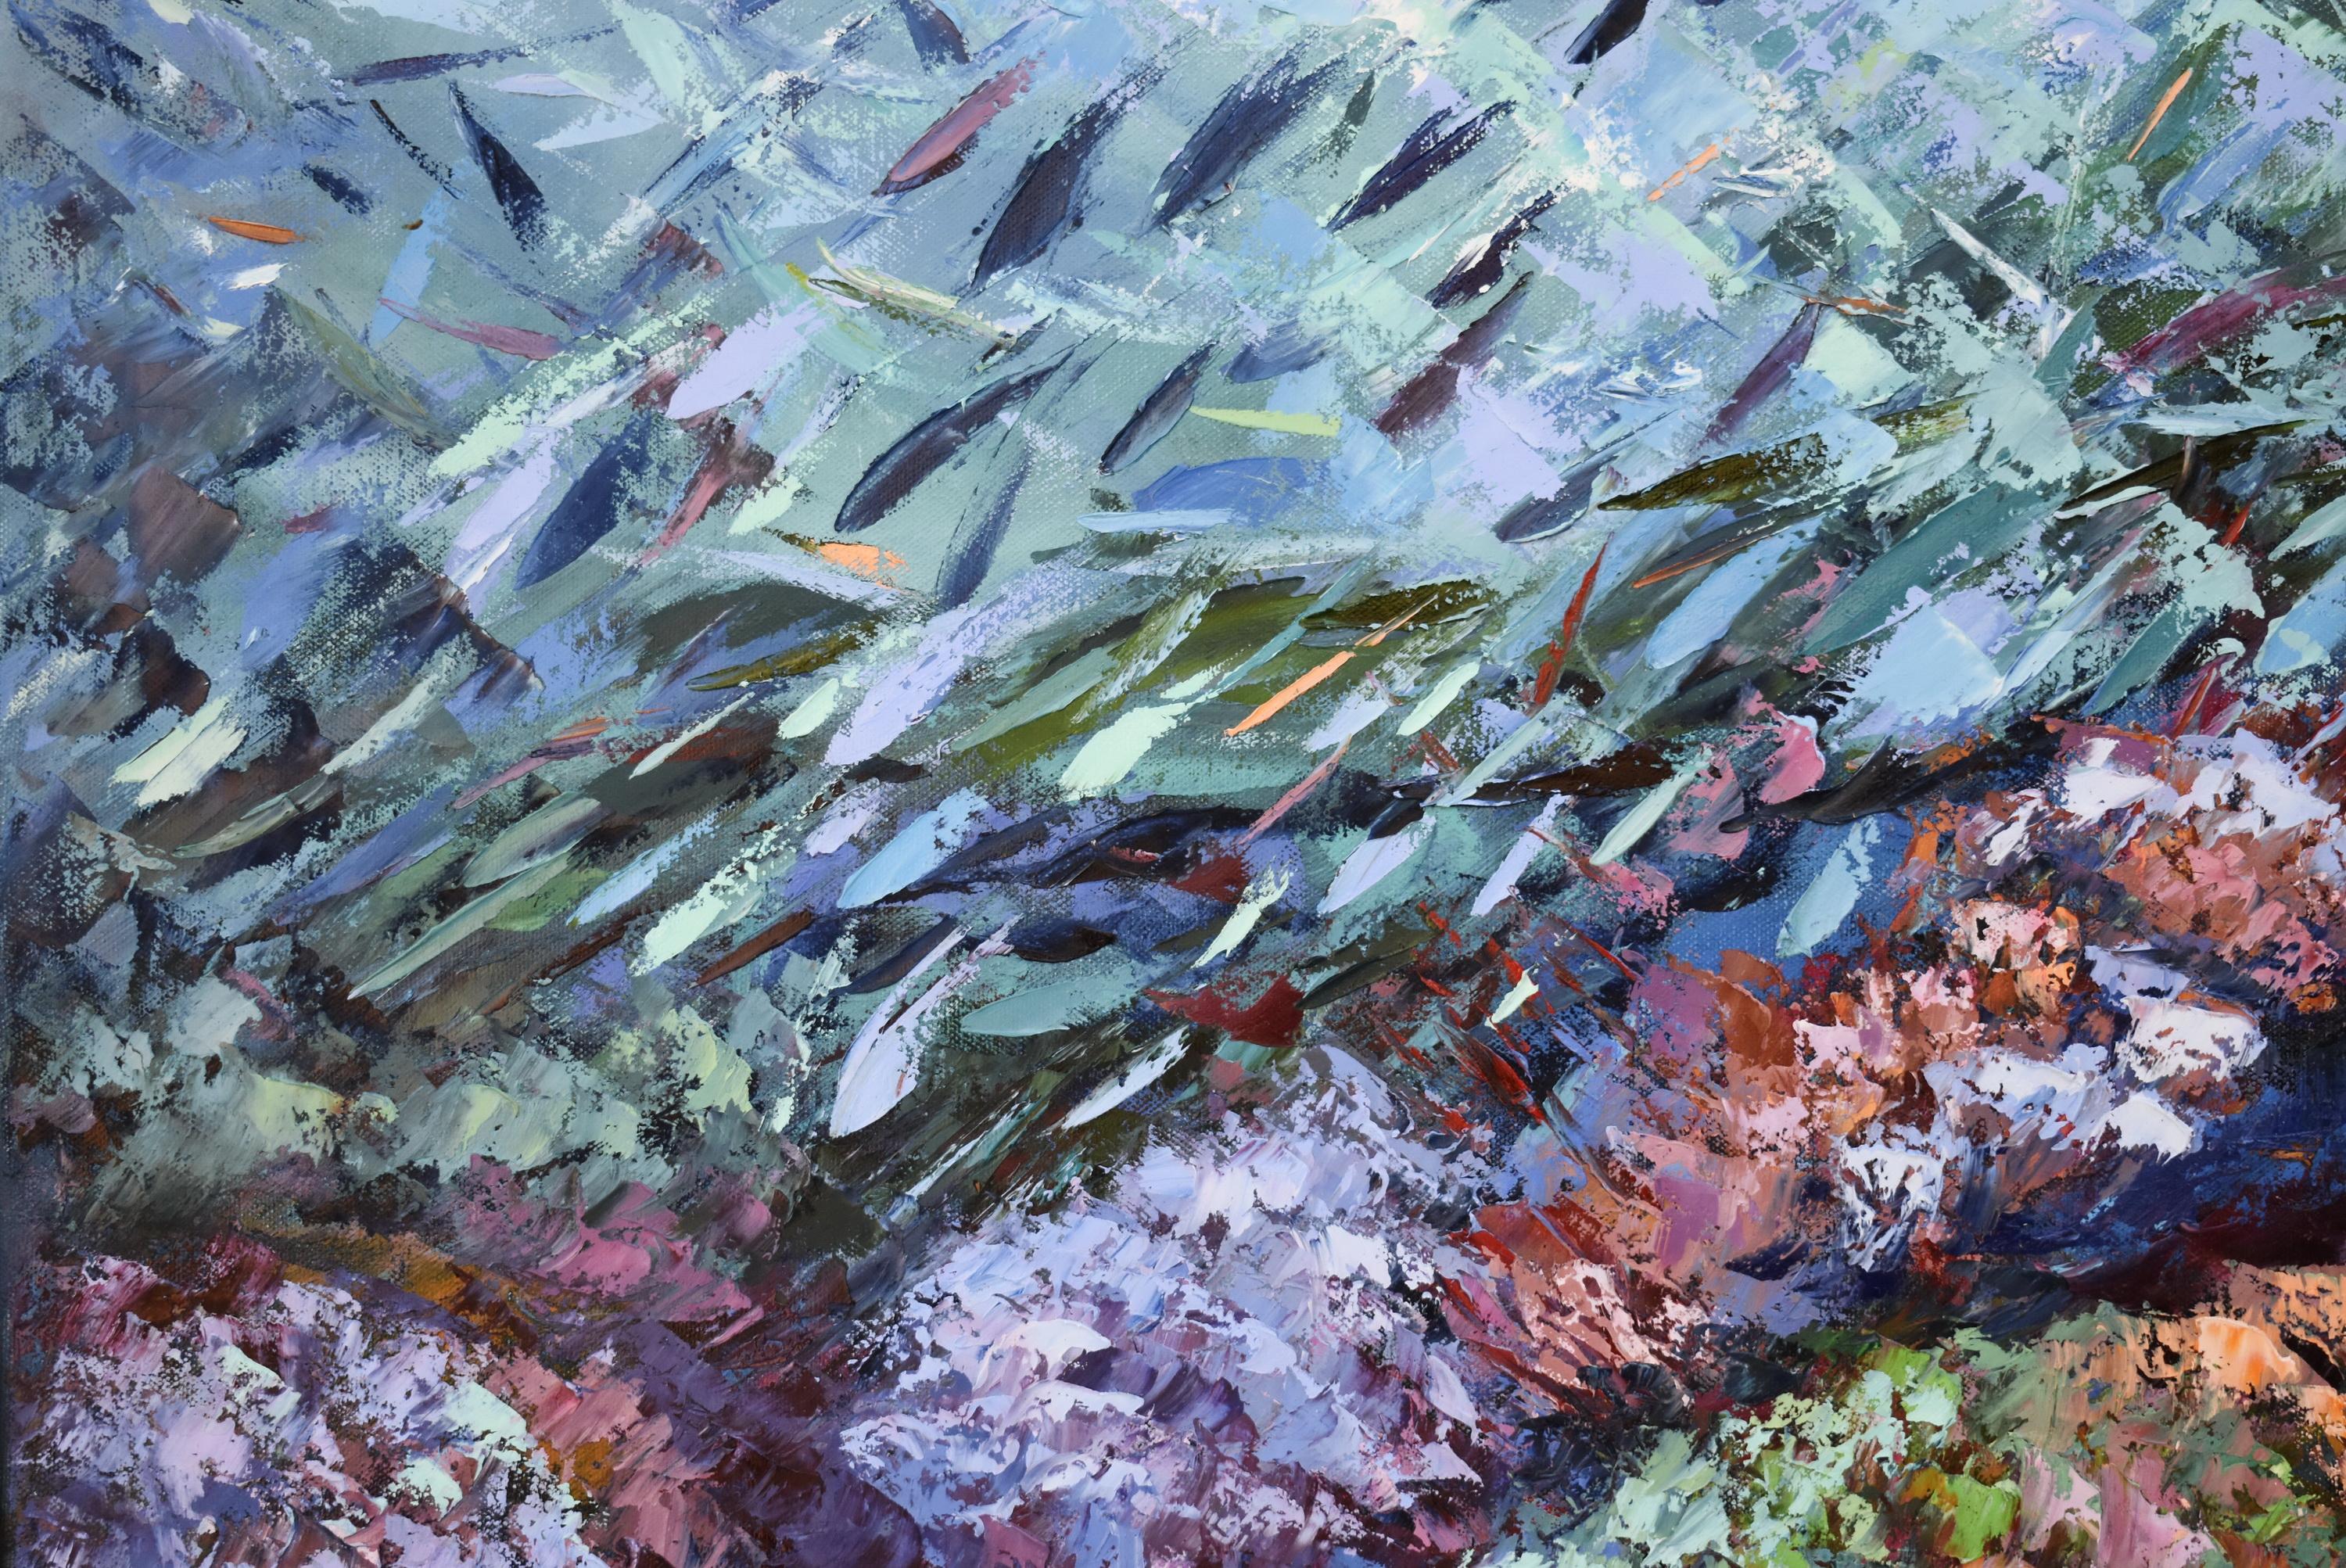 Coral Reef Painting Ocean Art Underwater Seascape Original Painting For Sale 4